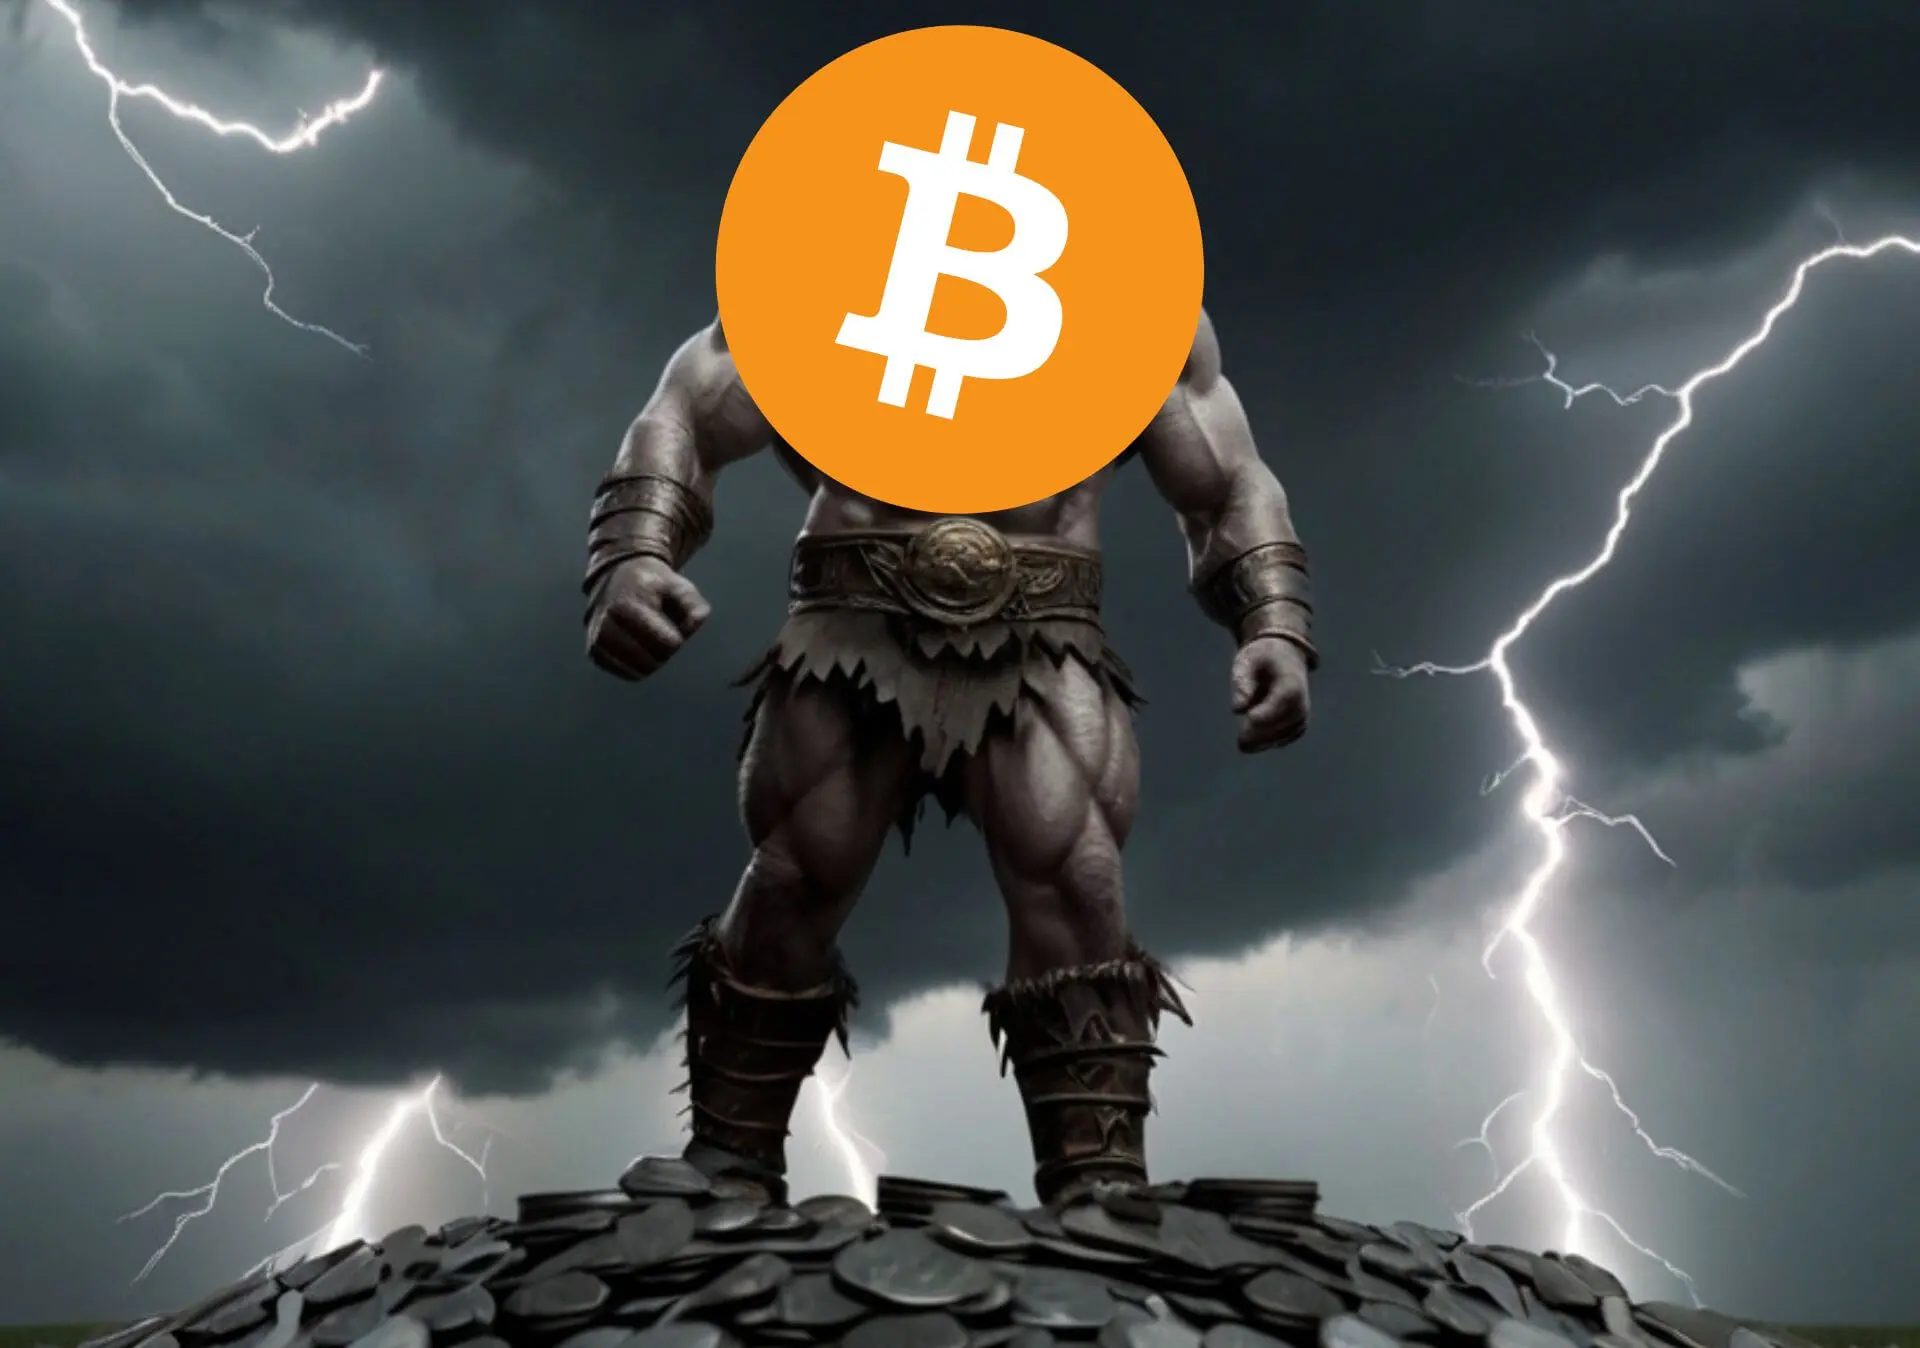 Olbrzym Bitcoin stojący na srebrnych monetach. W tle czarne chmury i pioruny.